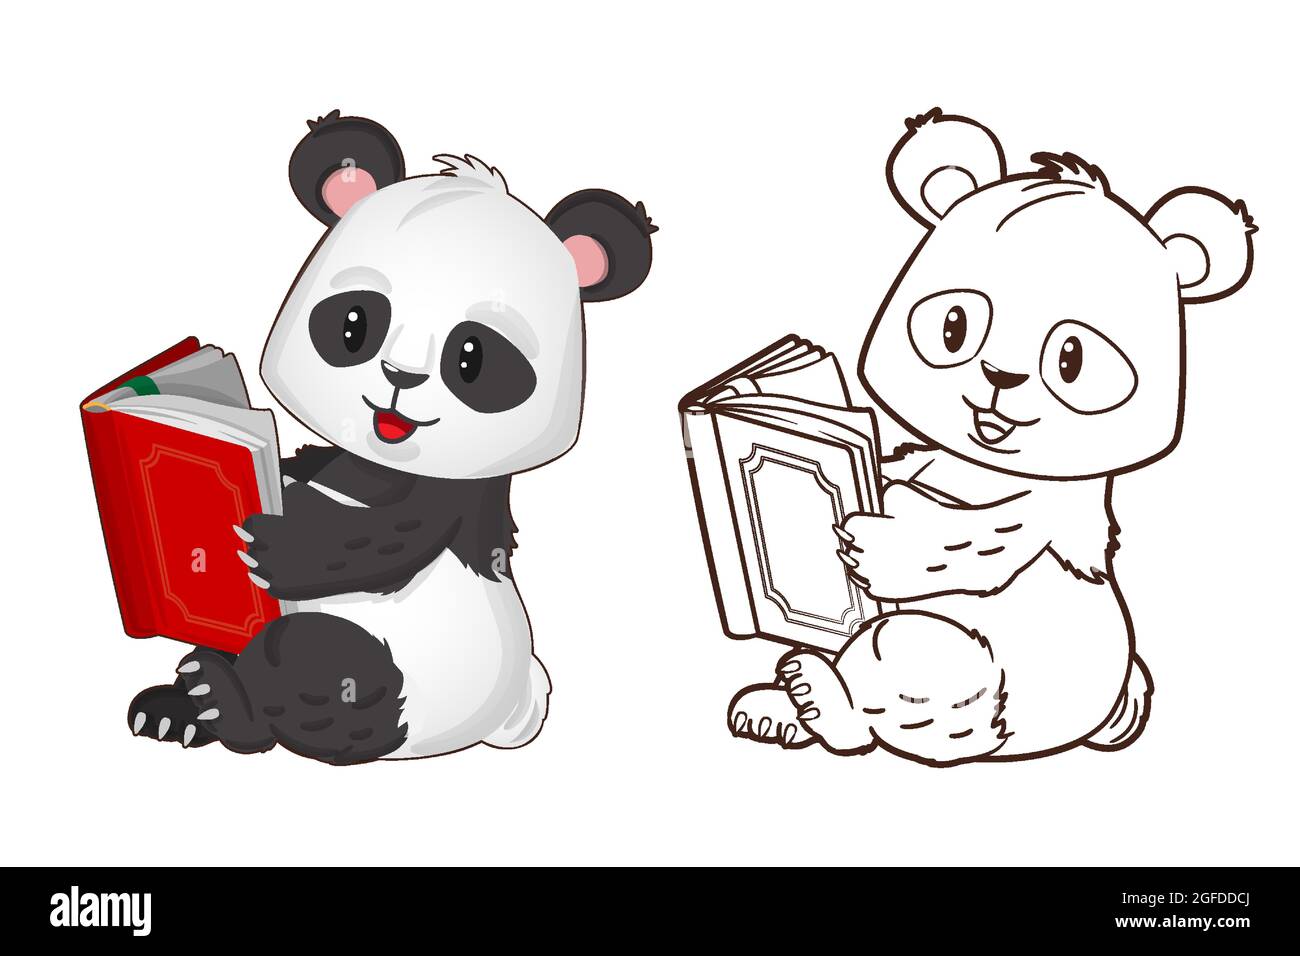 Libro para colorear: Pequeño y divertido panda sosteniendo un libro en sus manos. Ilustración vectorial en estilo de dibujos animados, lineart en blanco y negro Ilustración del Vector